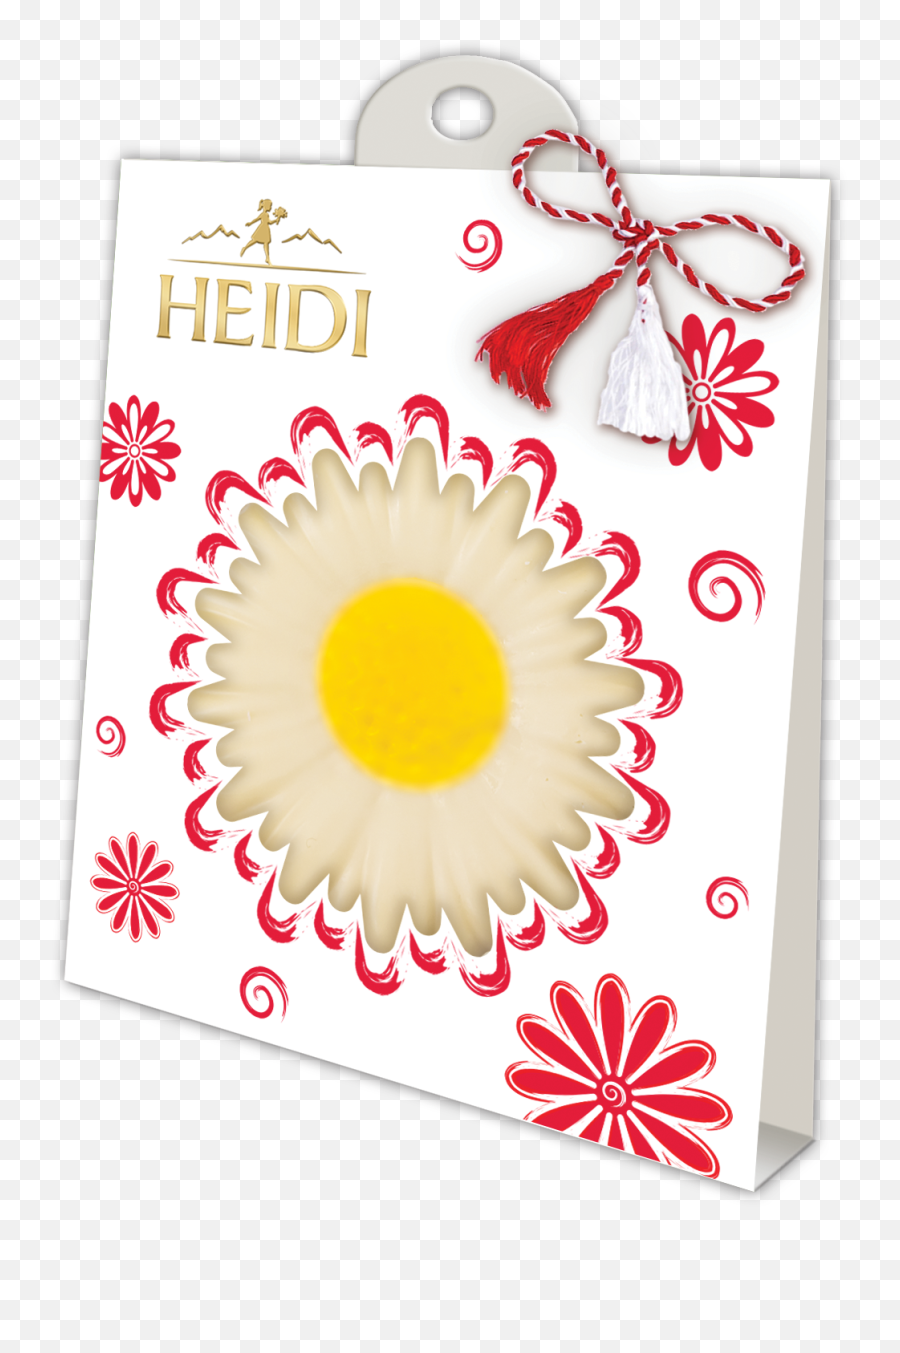 Heidi Chocolate - Ciocolata Heidi Martisoare De Ciocolata Emoji,Martisor Emoticon